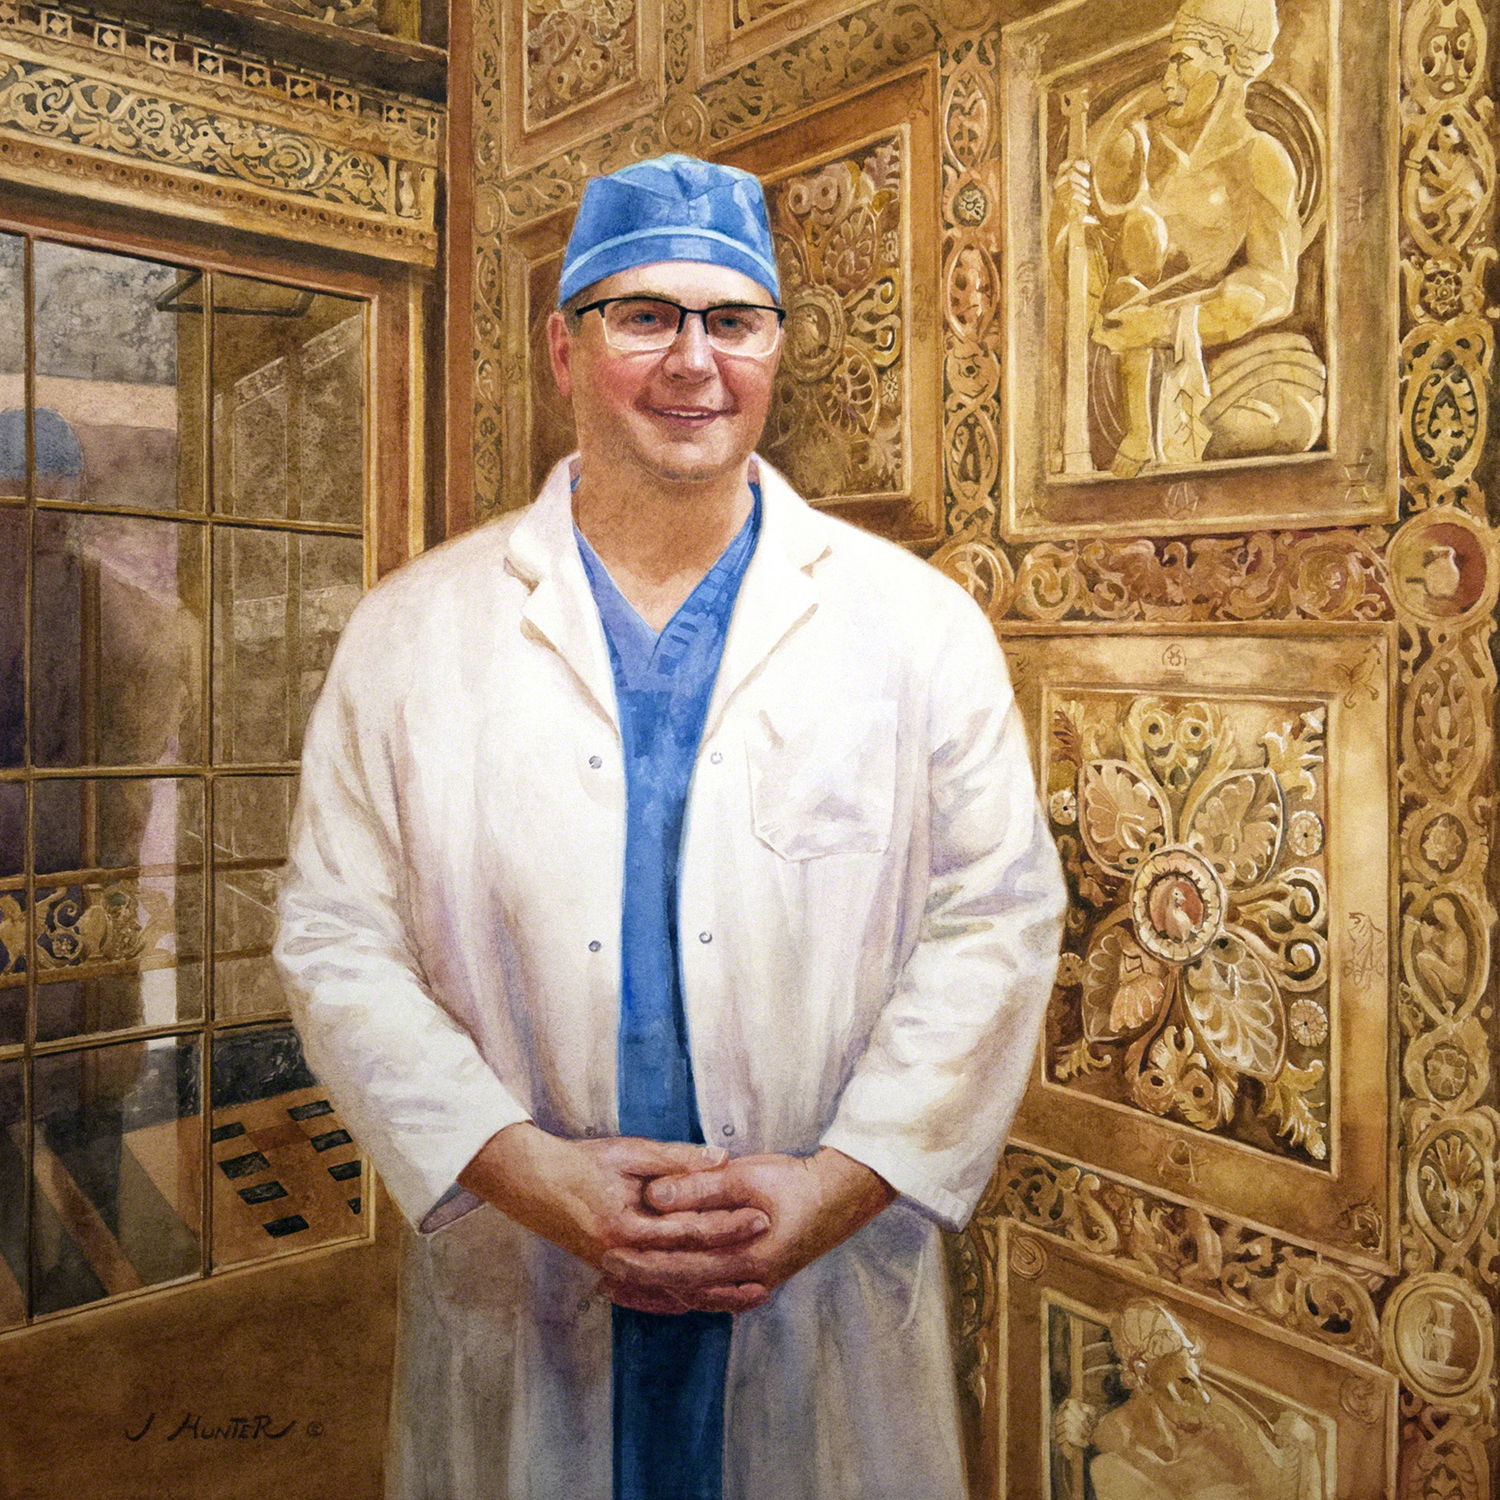 watercolor portrait of surgeon